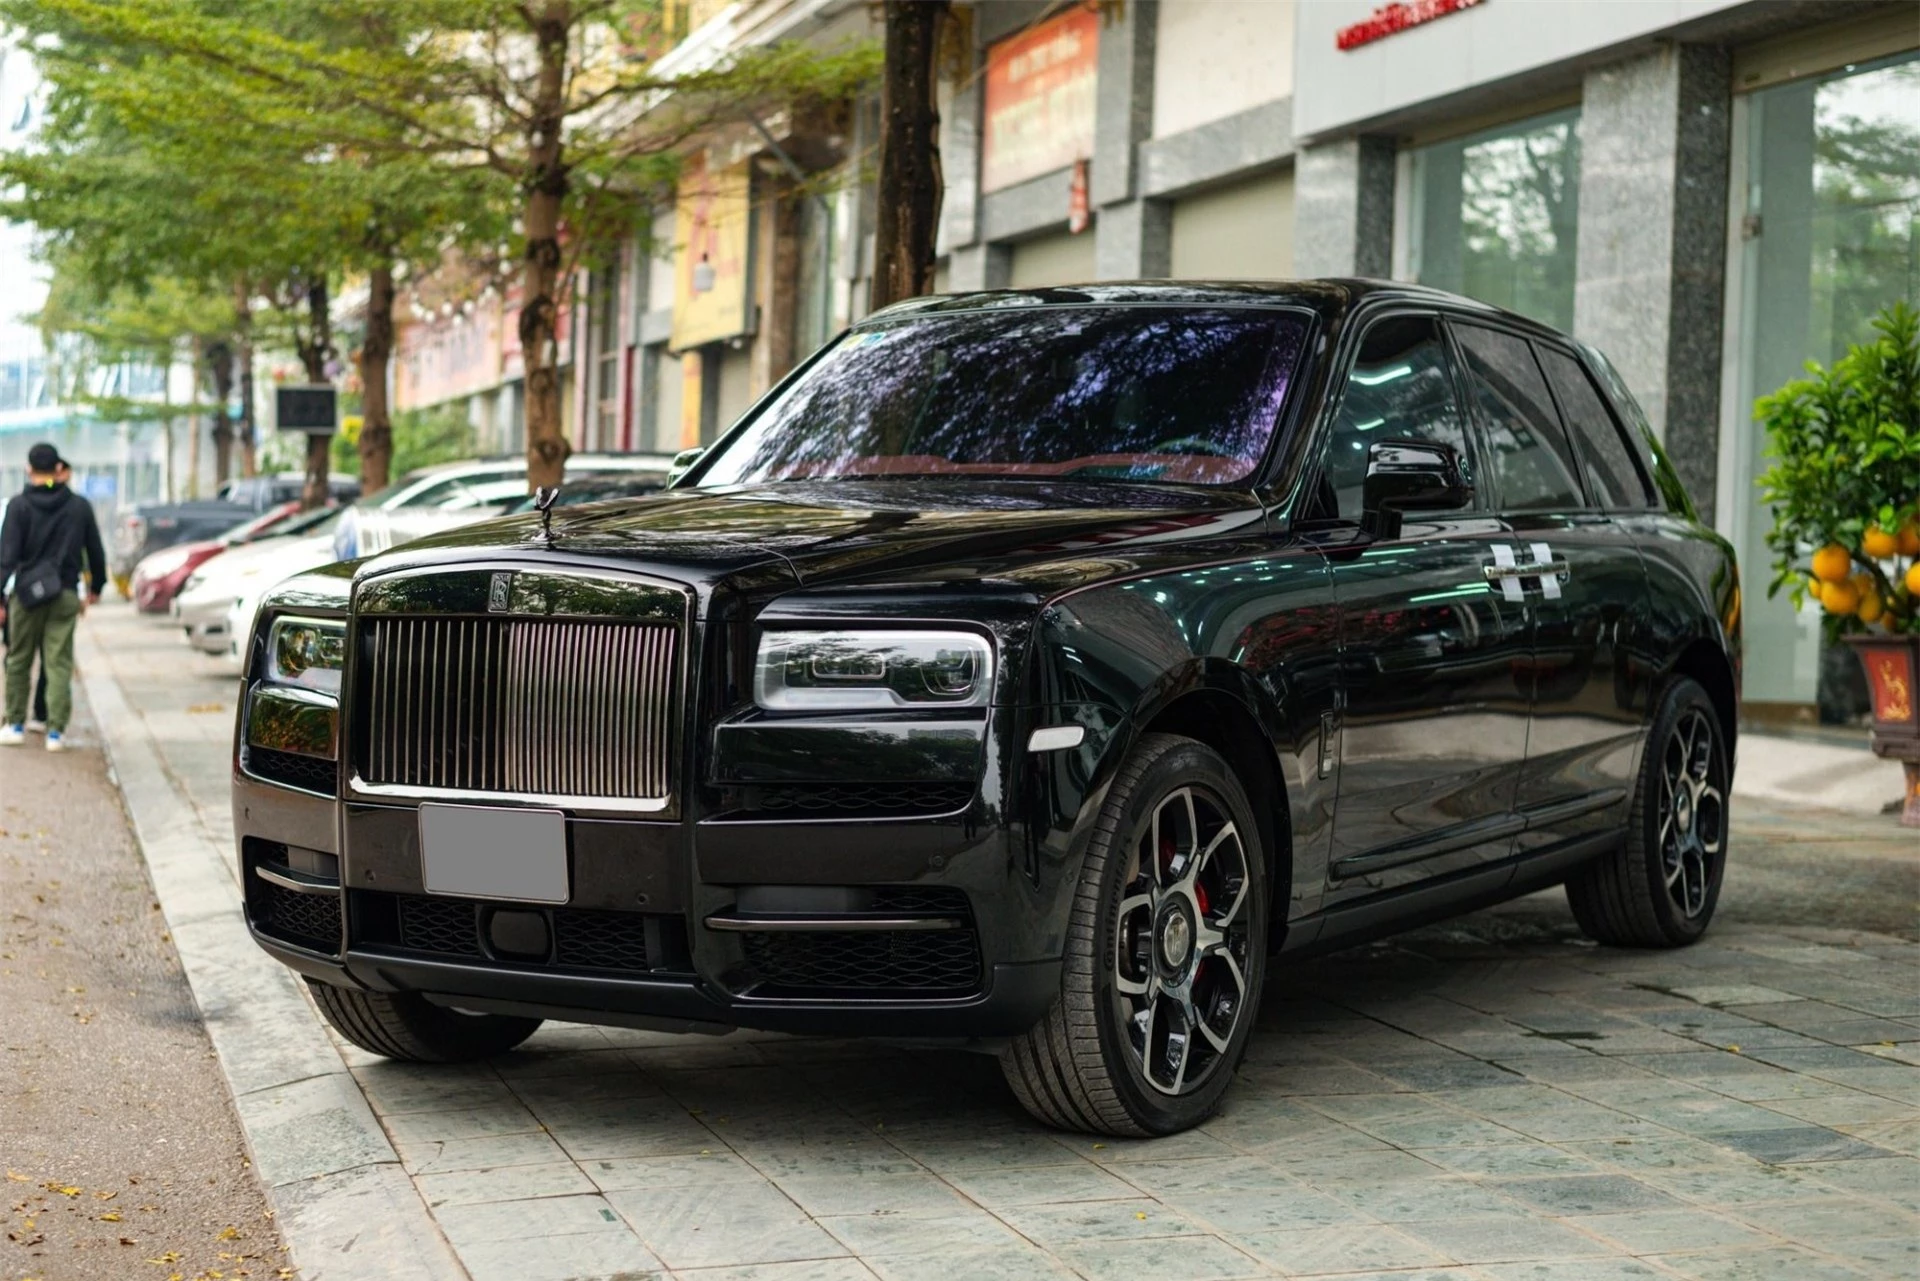 SUV siêu sang Rolls-Royce Cullinan Black Badge siêu lướt giá 'sương sương' 40 tỷ đồng 174134